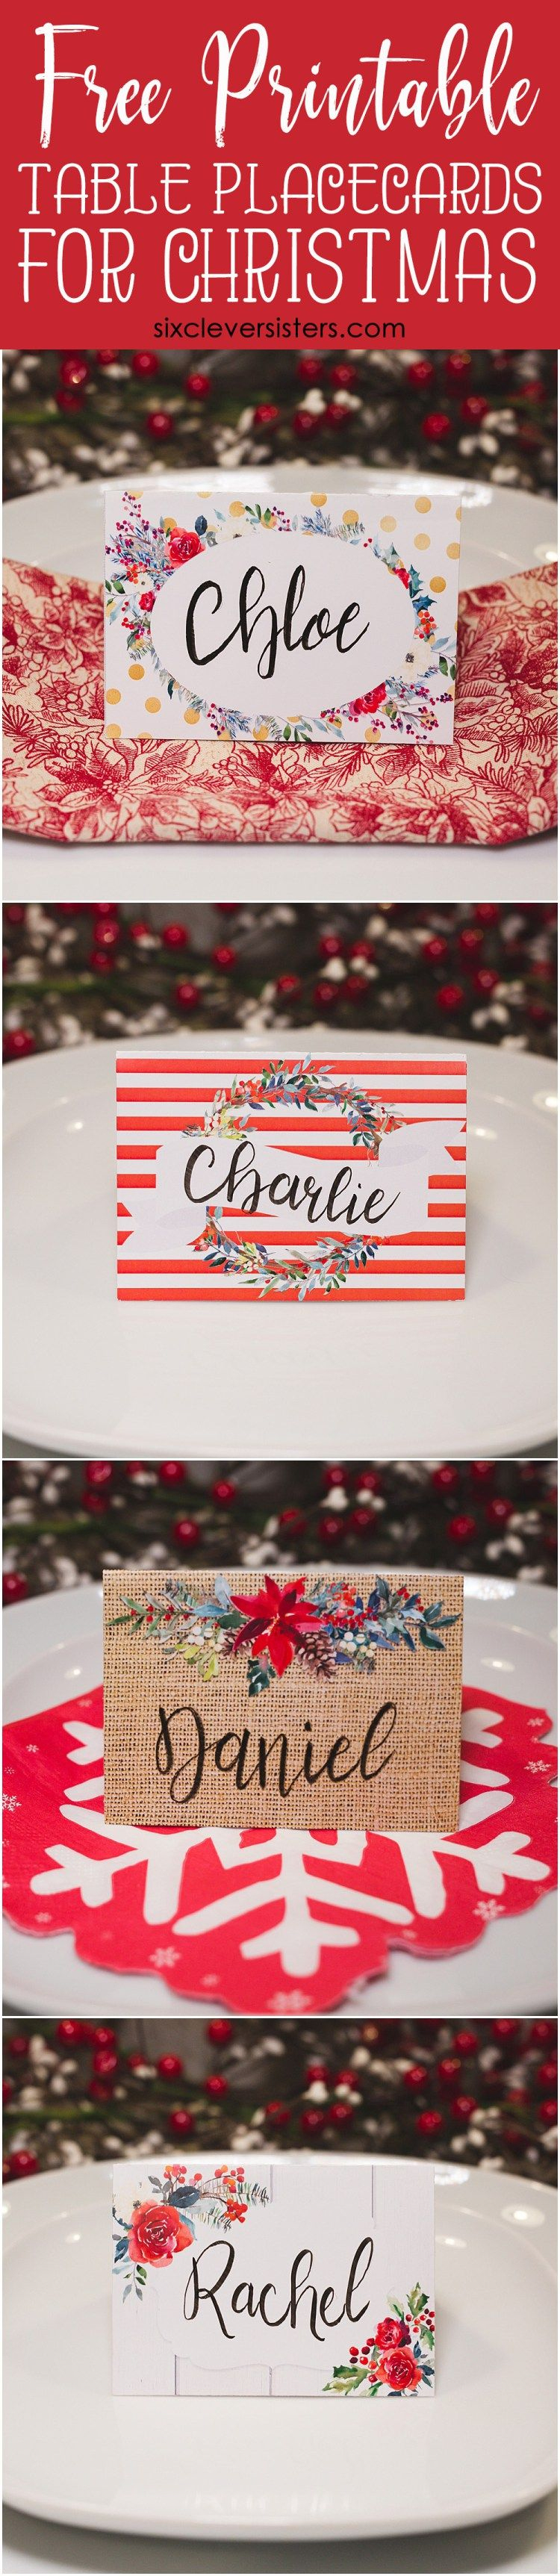 Christmas Table Place Cards | Christmas Name Place Cards | Christmas - Christmas Table Name Cards Free Printable